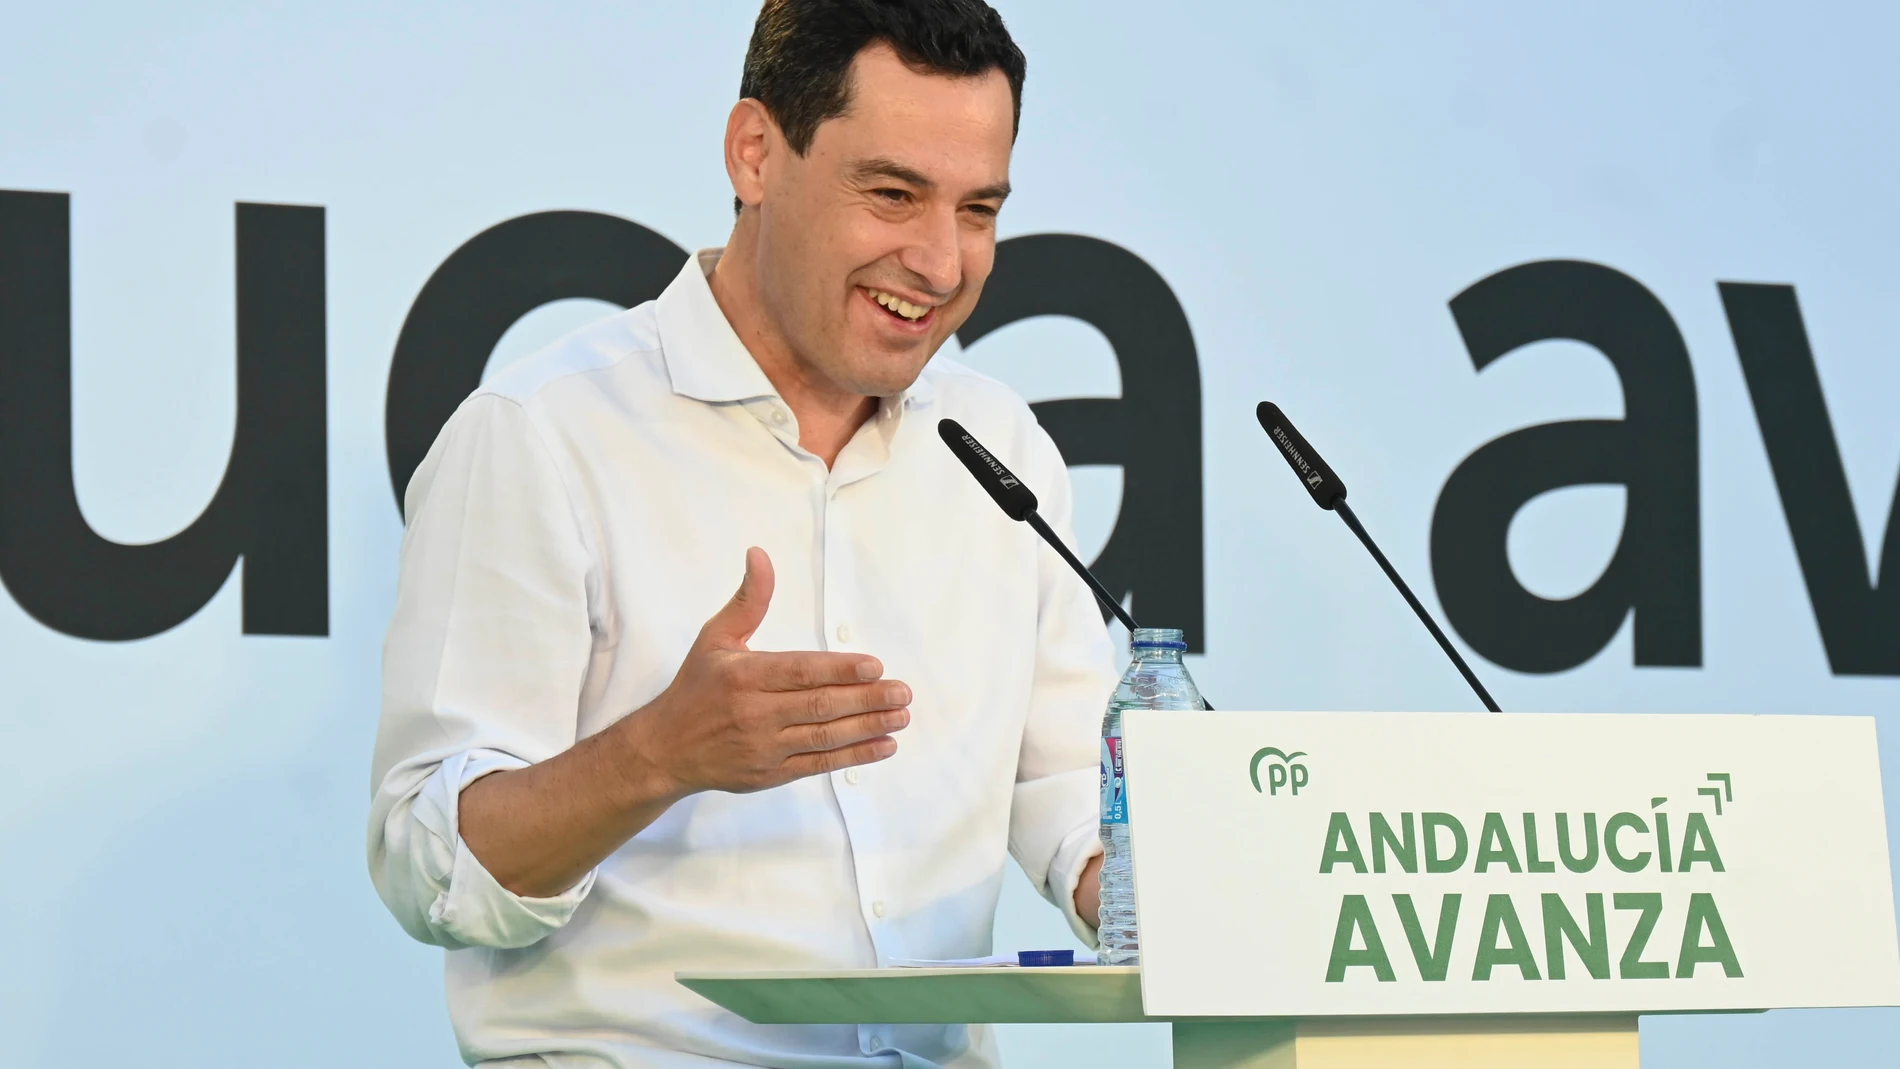 El presidente de la Junta de Andalucía y candidato del PP para las elecciones andaluzas, Juanma Moreno, participa en un acto celebrado en Churriana de la Vega, Granada, el pasado jueves